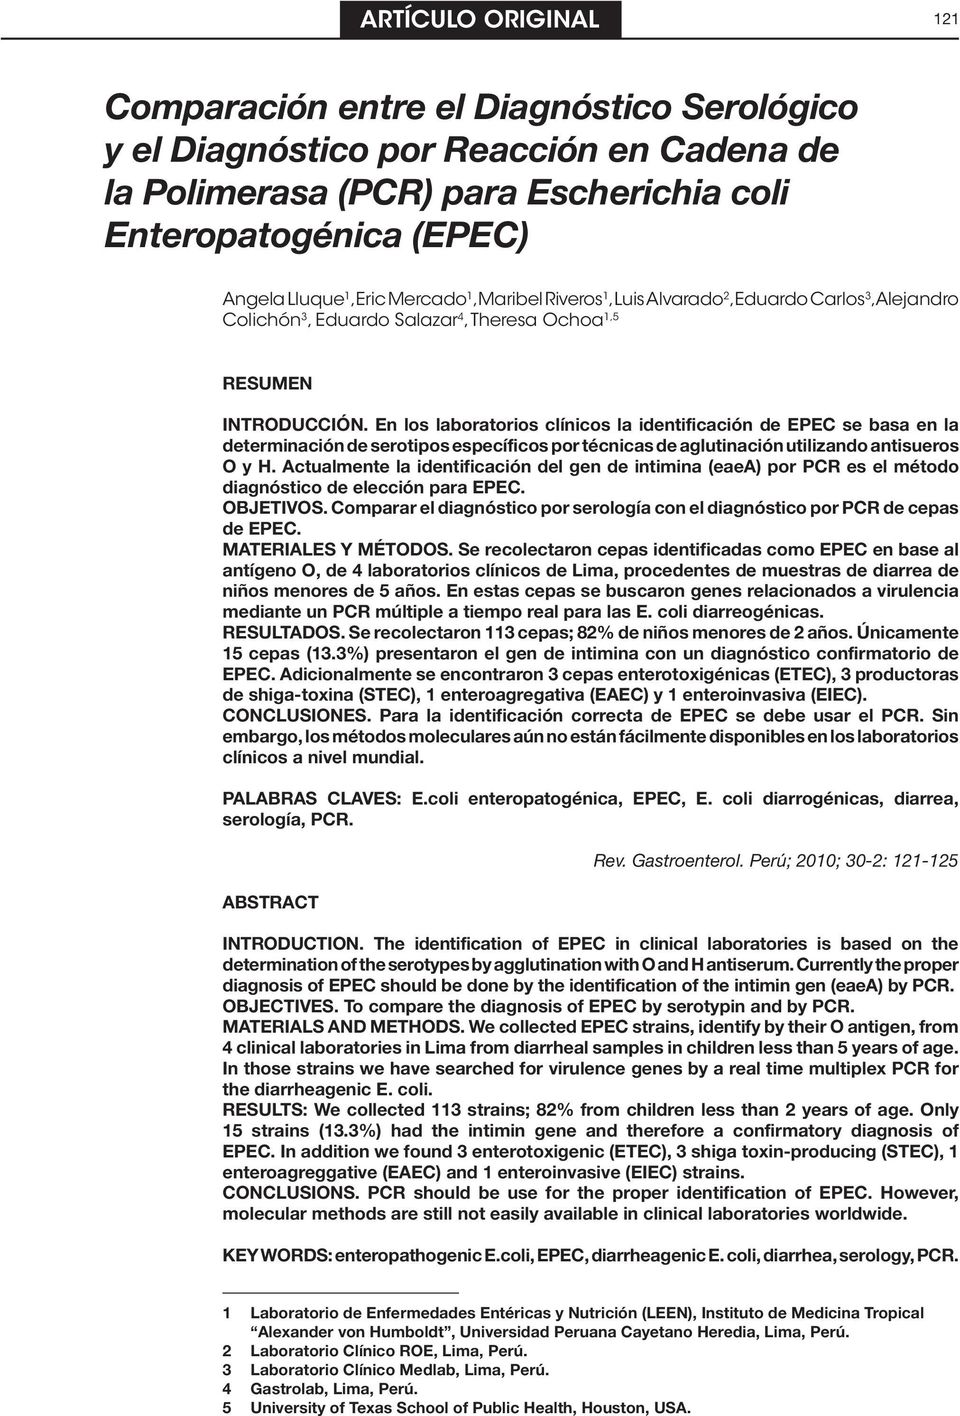 En los laboratorios clínicos la identificación de EPEC se basa en la determinación de serotipos específicos por técnicas de aglutinación utilizando antisueros O y H.